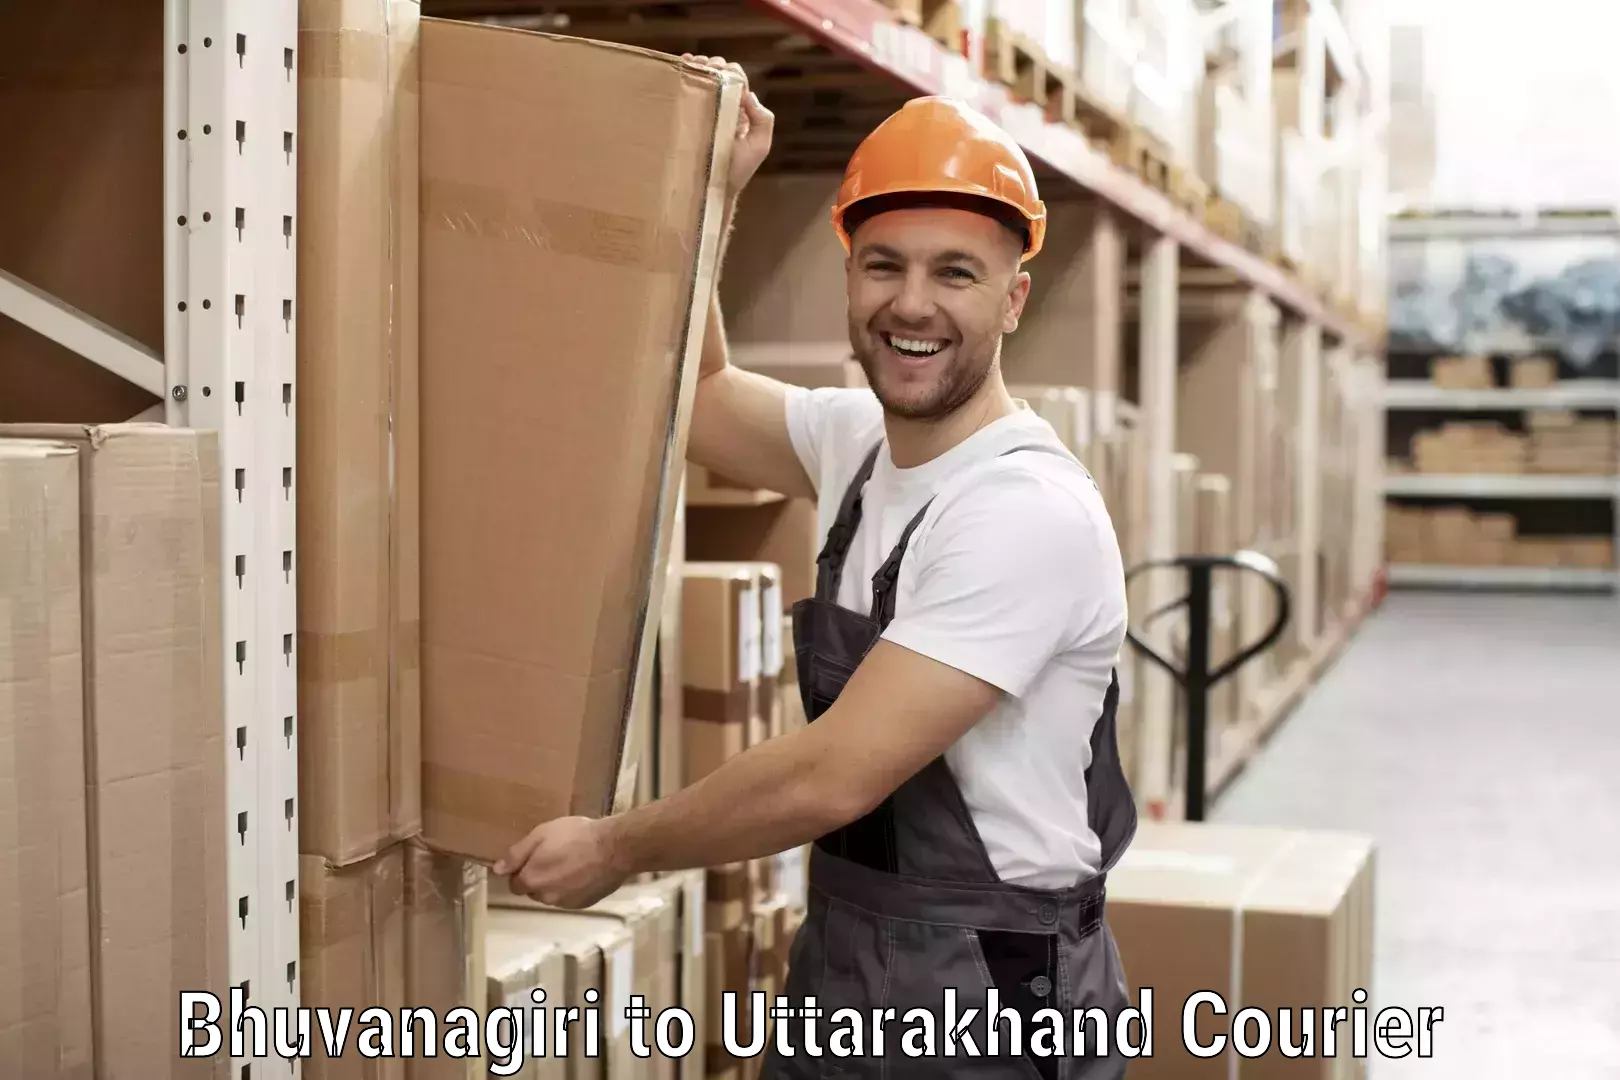 Large package courier Bhuvanagiri to Uttarakhand